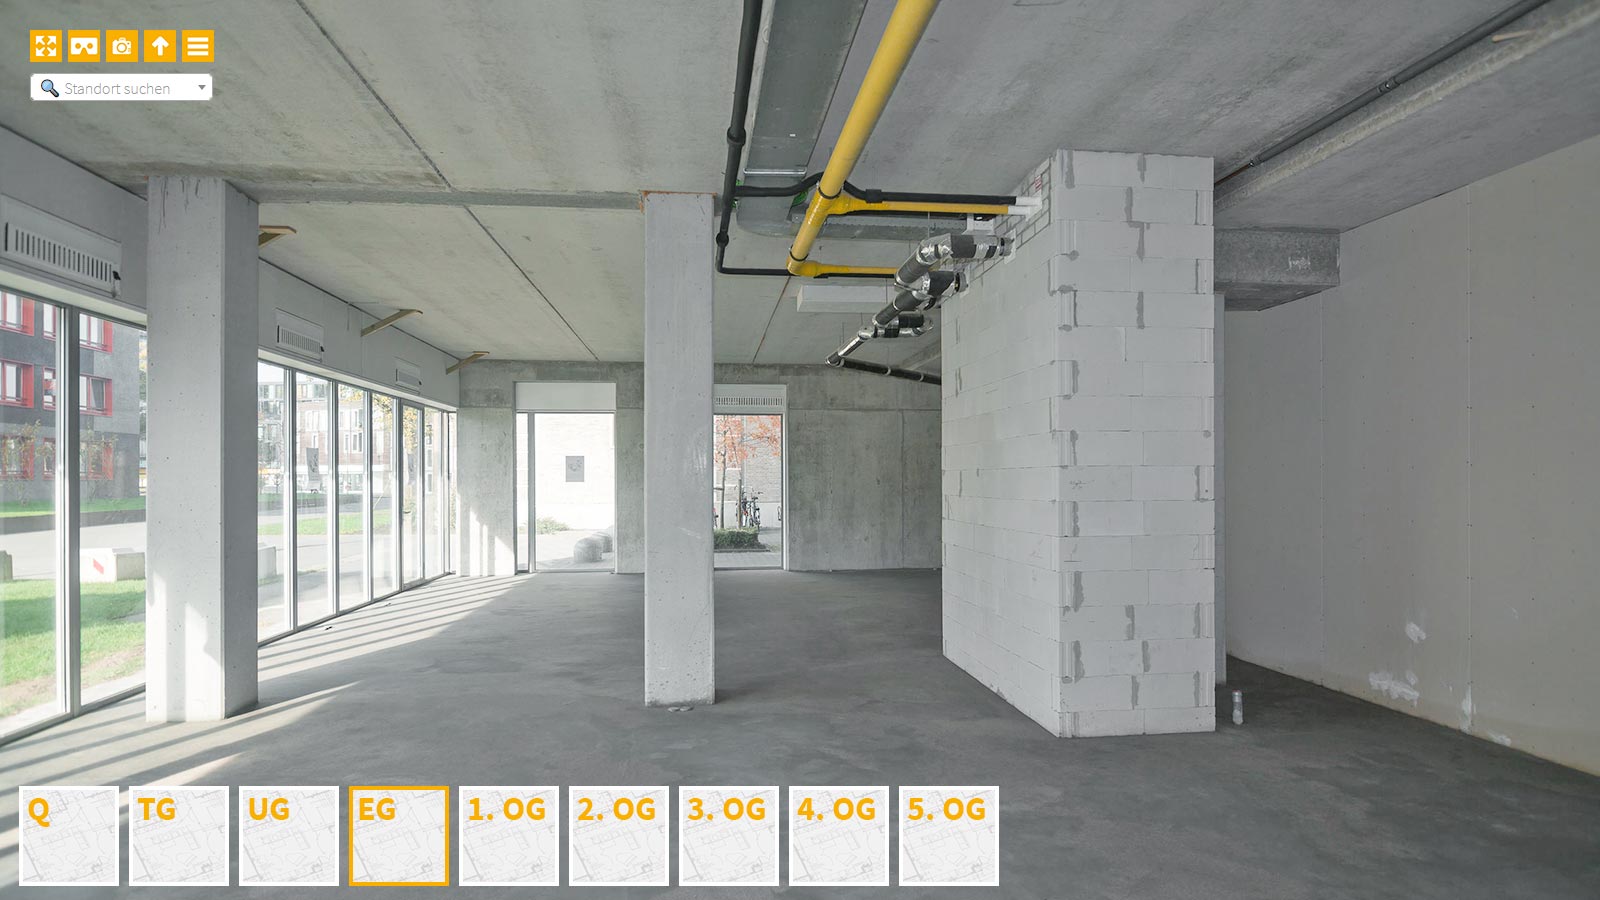 Baudokumentation 360 Grad bei gestörten Projekten in 


	


	


	


	


	


	


	


	


	


	Bonn









, Bilddokumentation als virtueller Rundgang